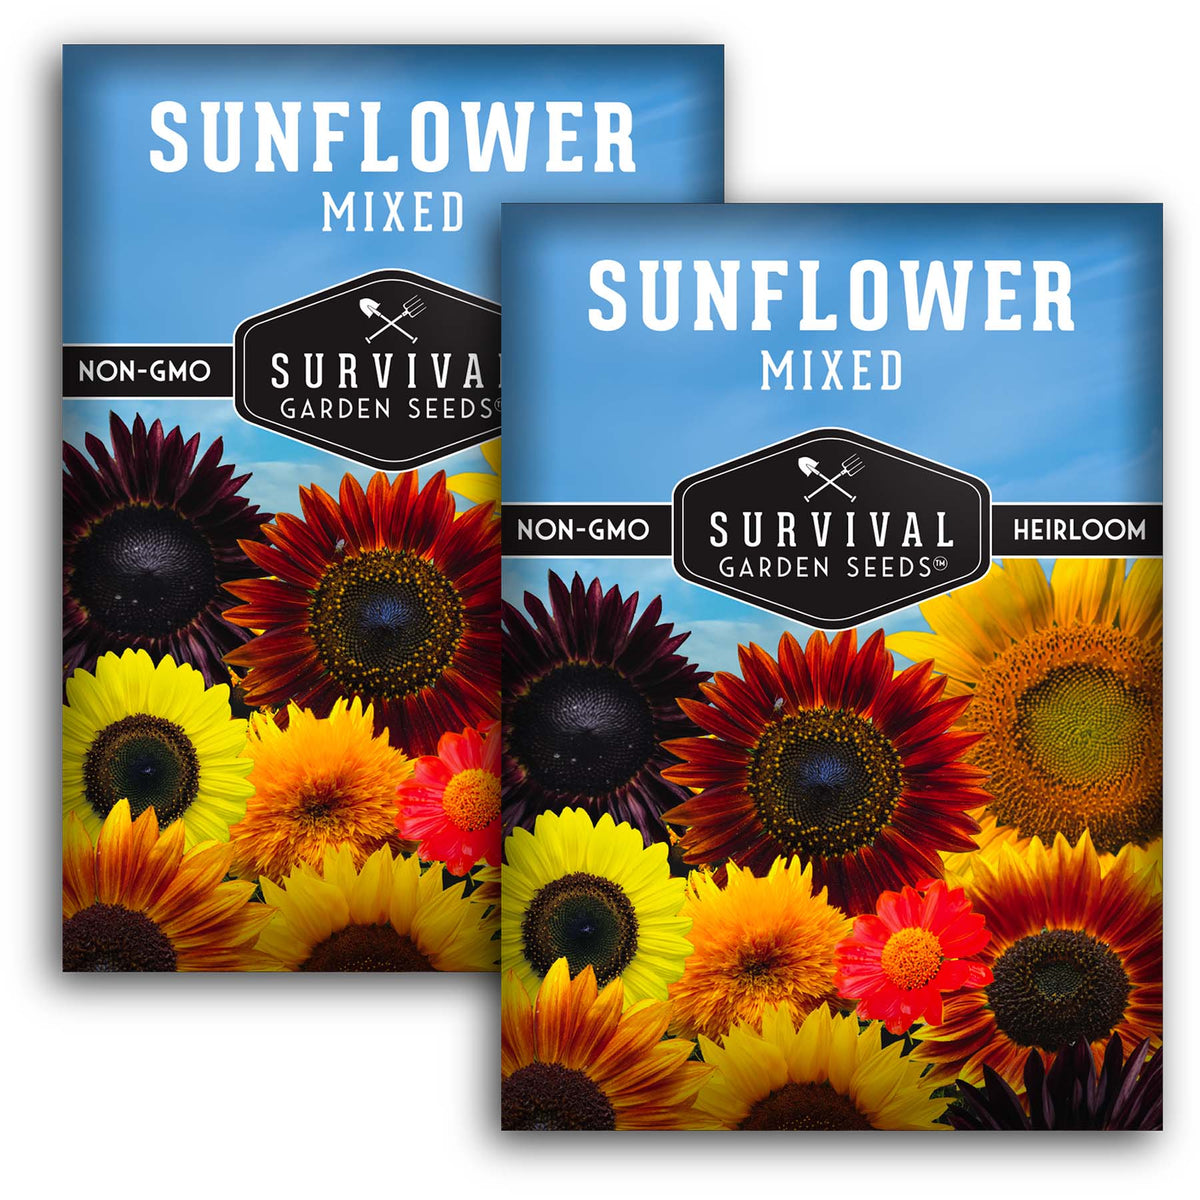 Mixed Sunflower Seeds